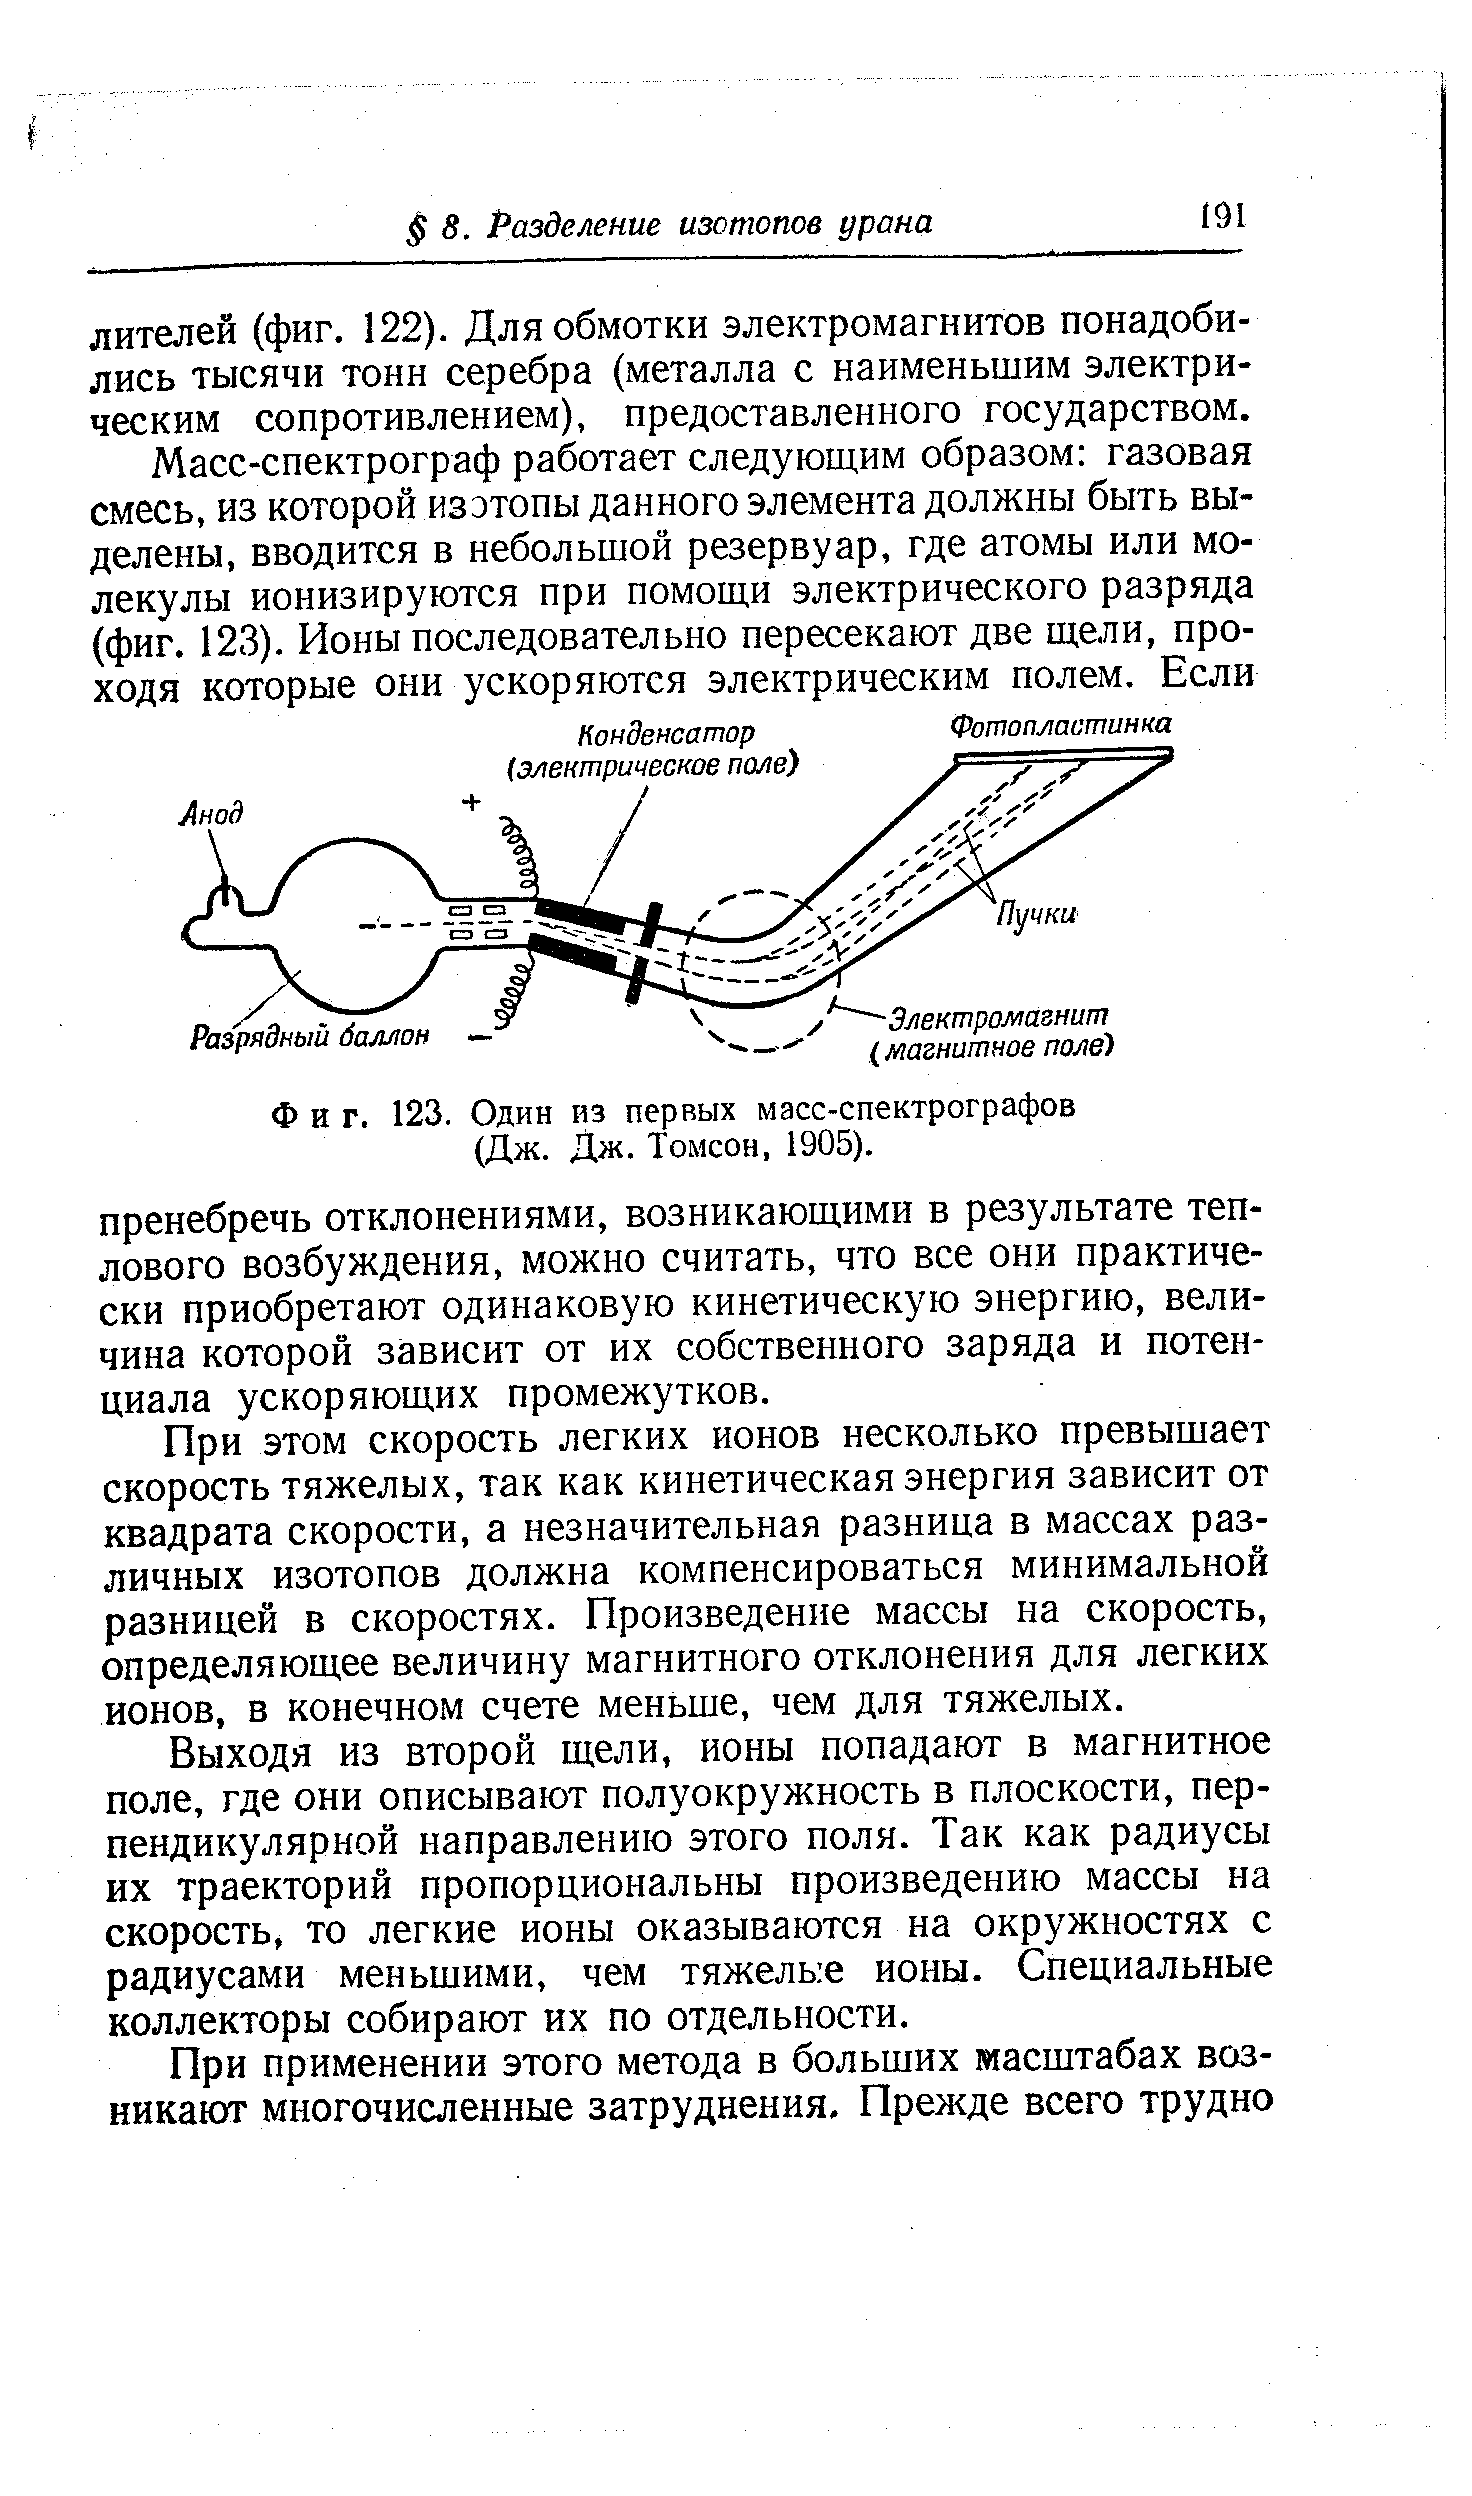 Фиг. 123. Один из первых масс-спектрографов (Дж. Дж. Томсон, 1905).
